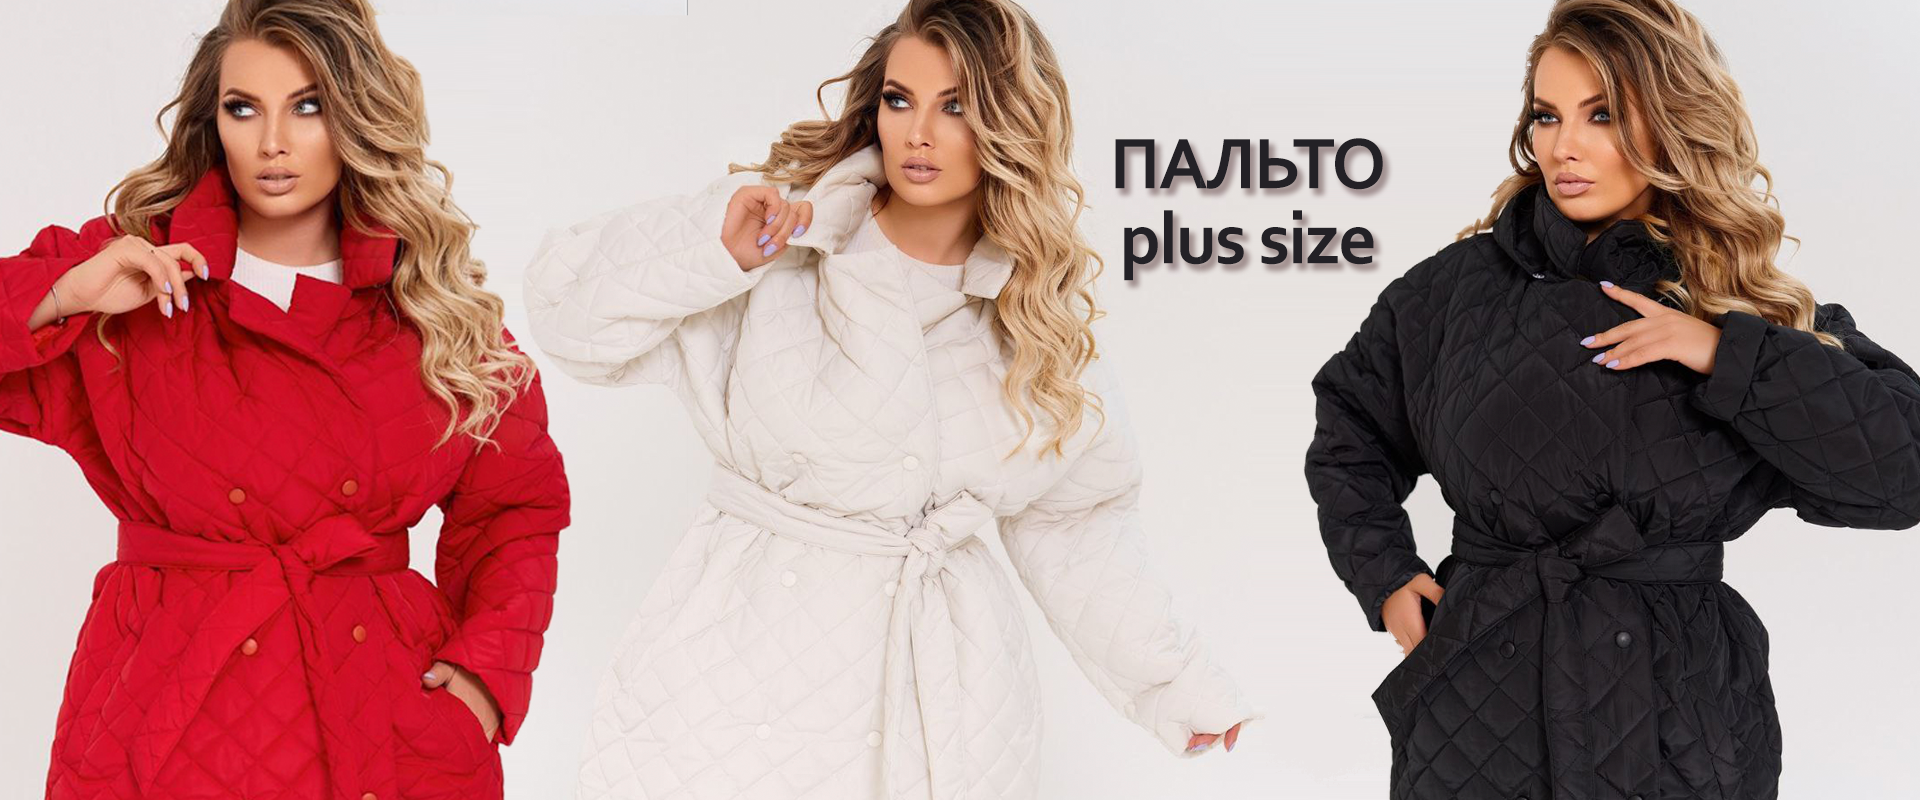 Пальто plus-size Tatiana